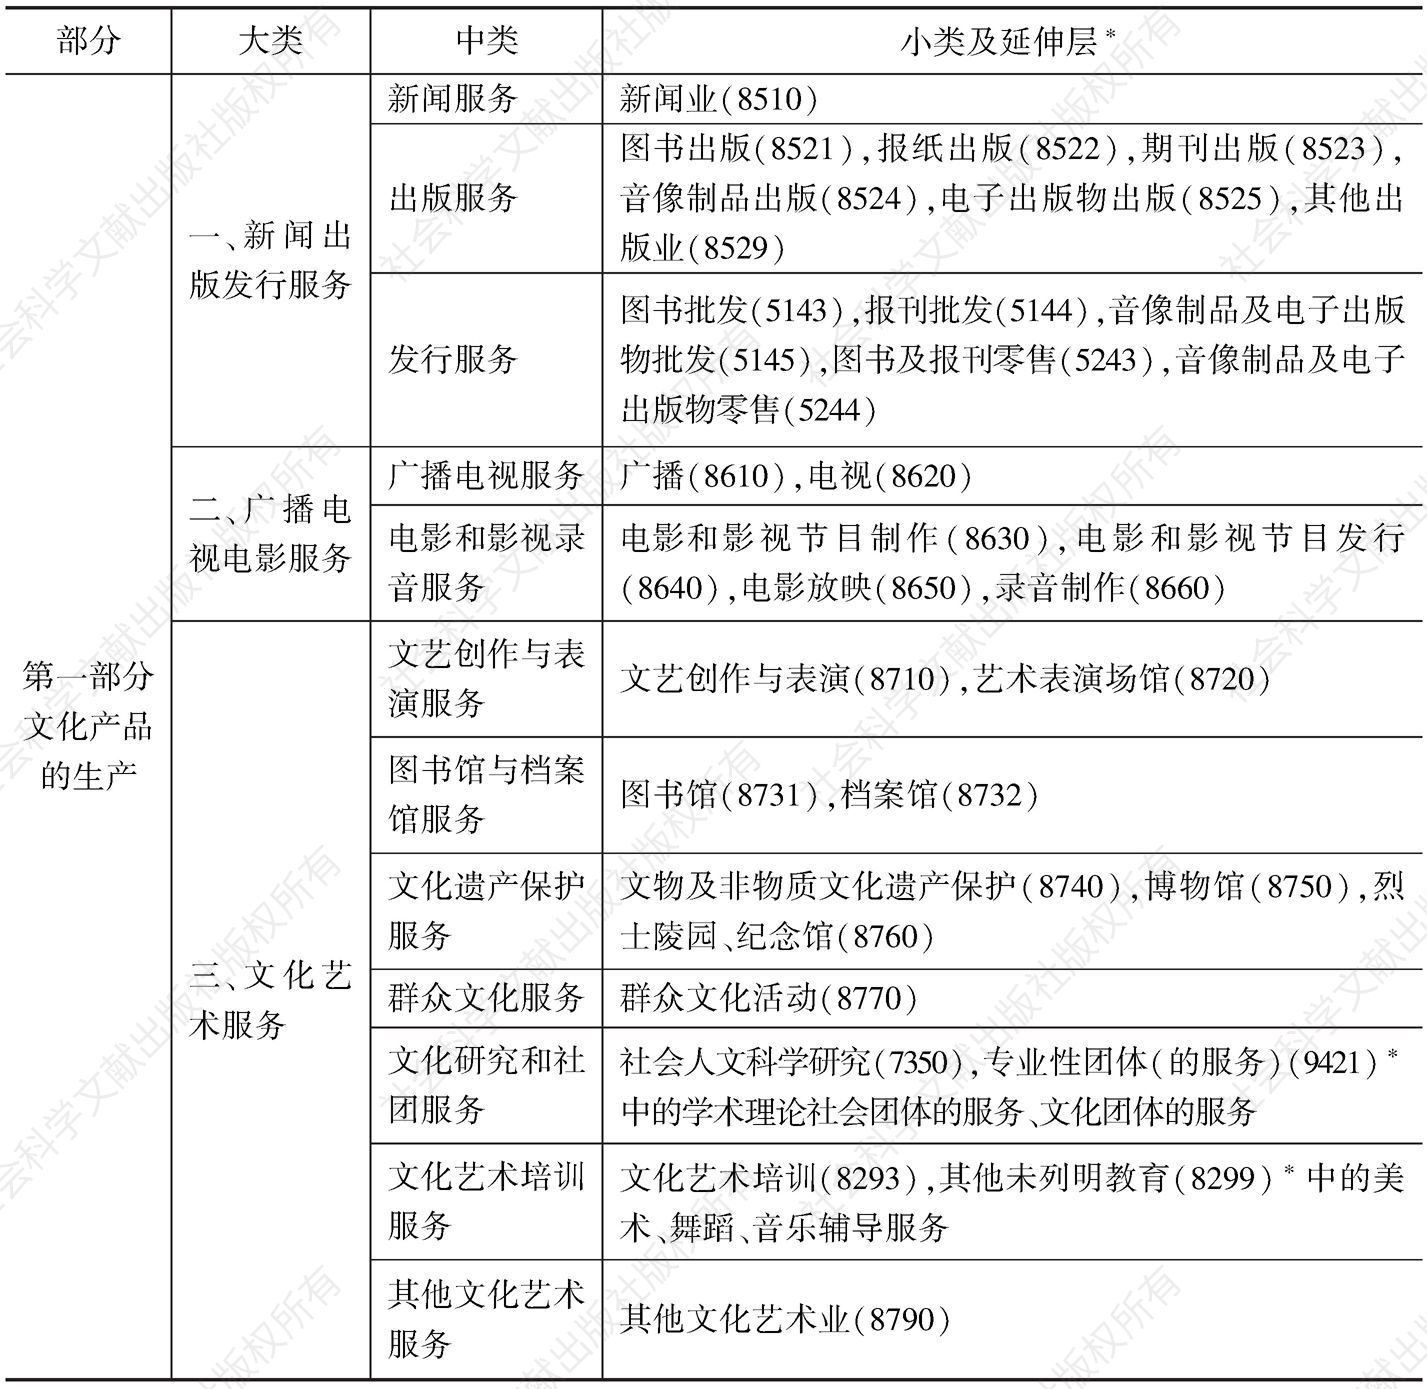 表1-2 中国文化产业标准分类